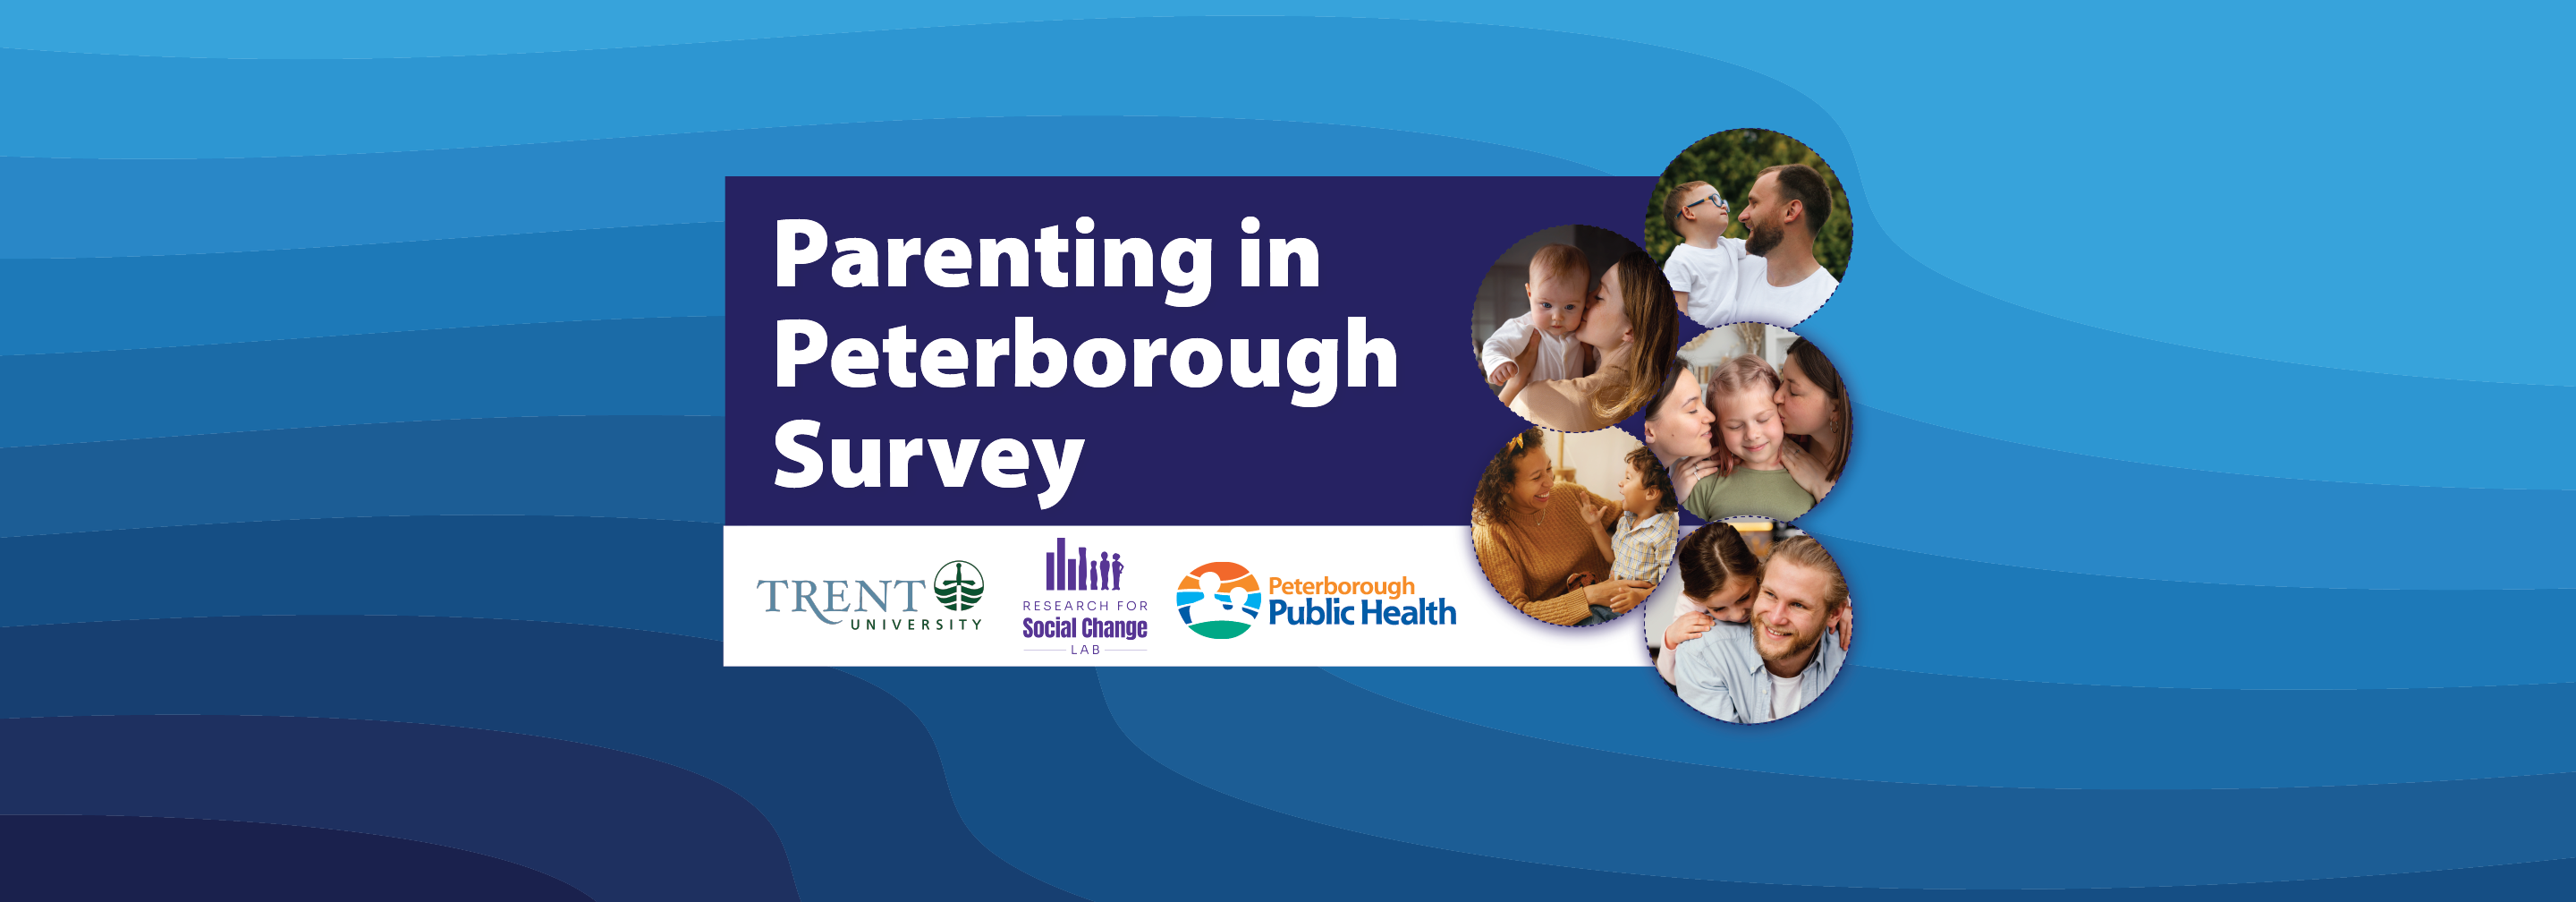 Parenting in Peterborough Survey